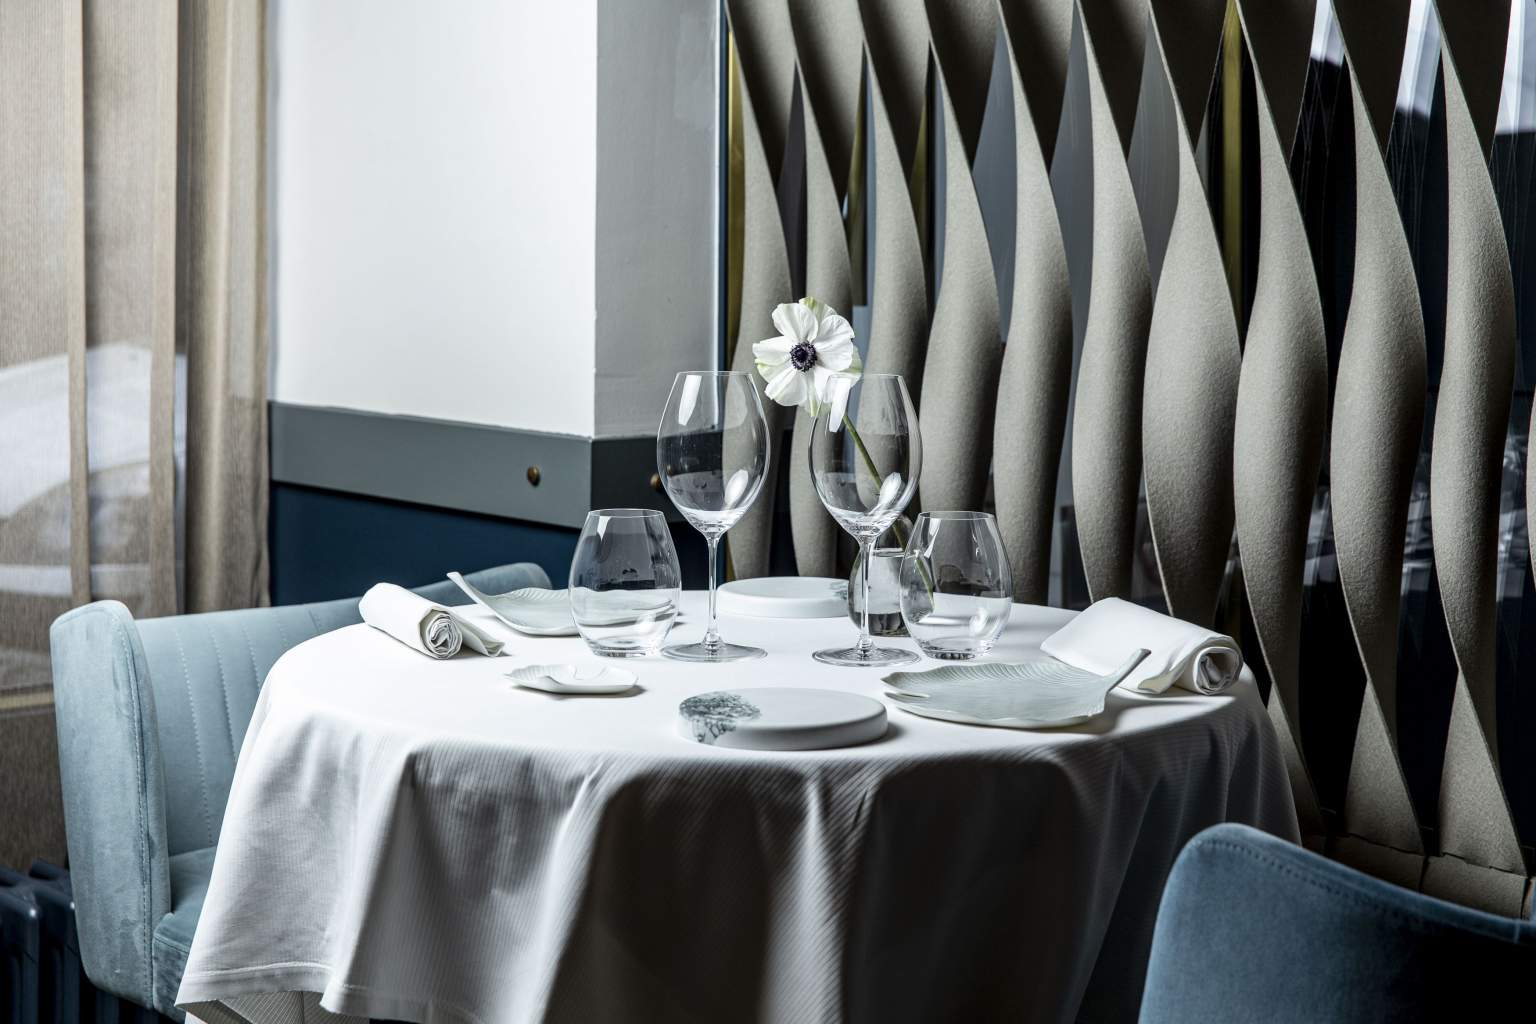 
                  レストラン「ラクセル」の美しいペンダント形式のライトと内装デザイン
               